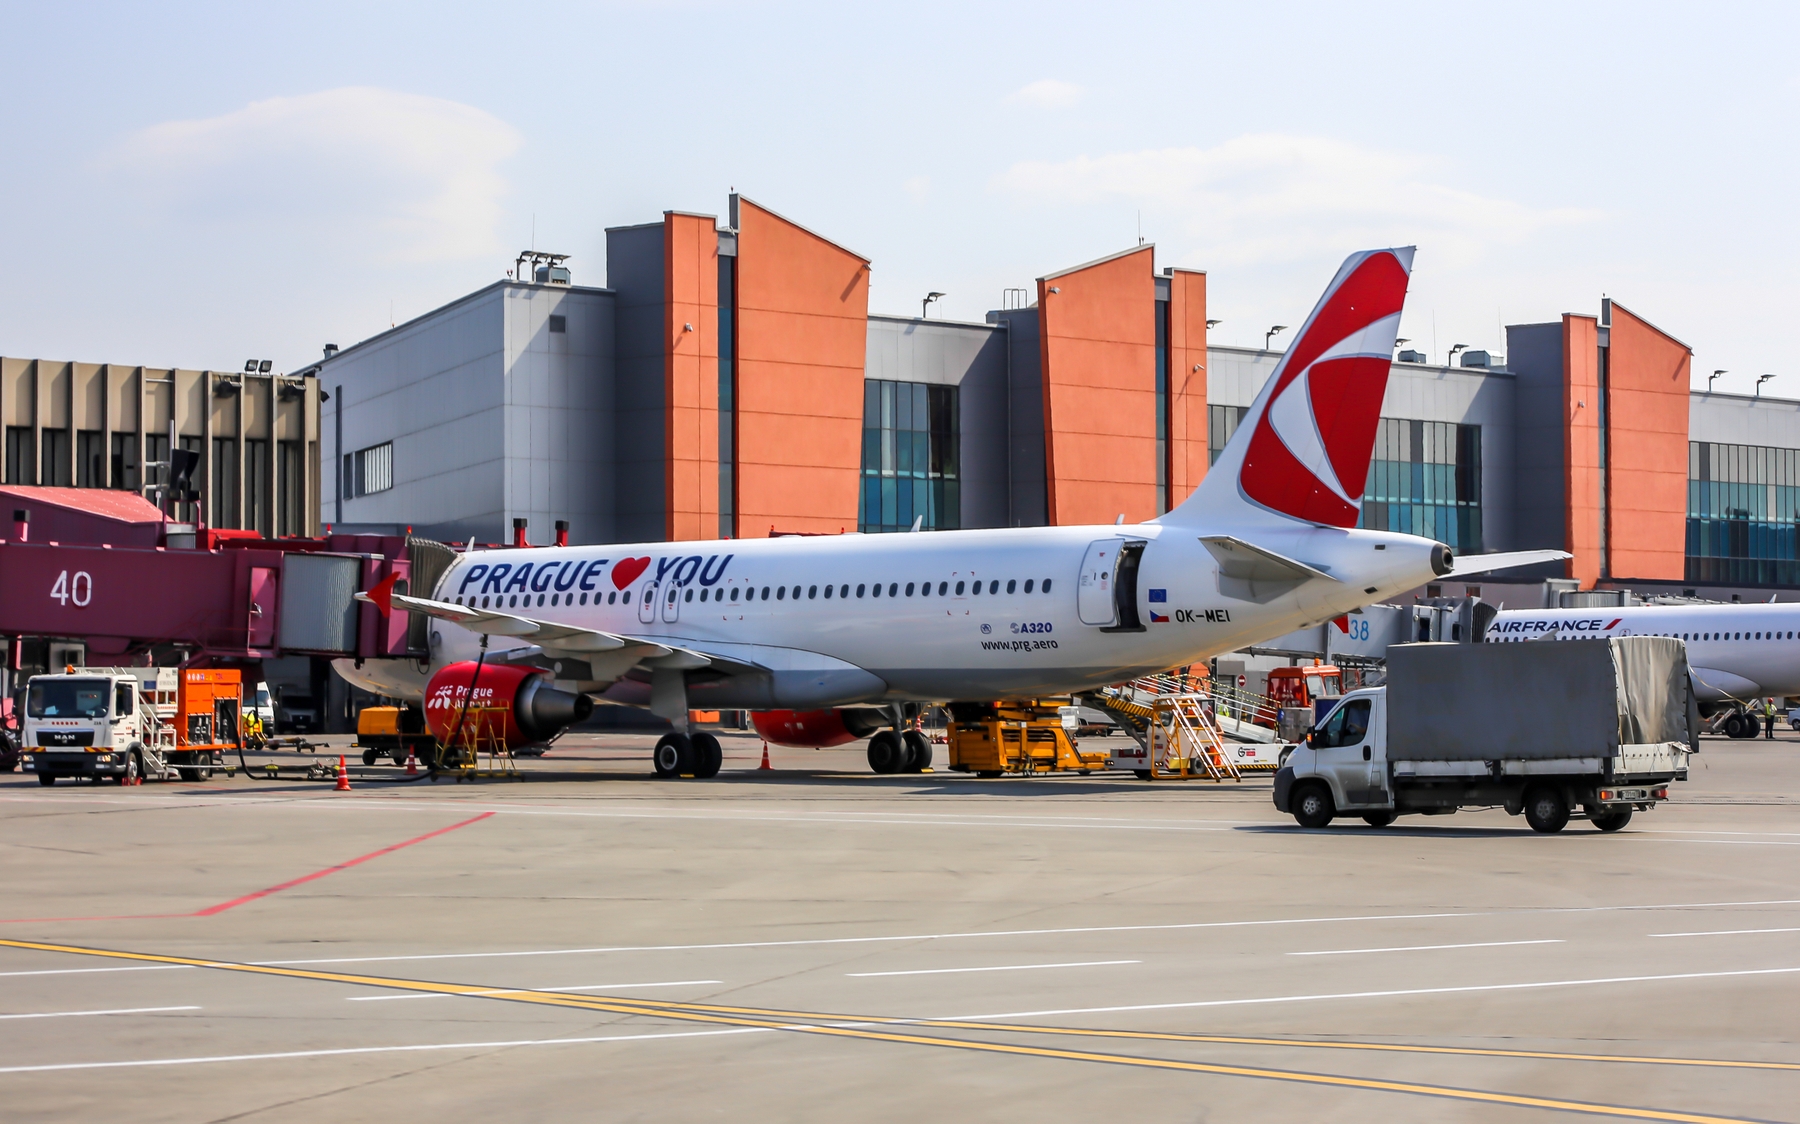 Авиакомпания Czech Airlines возобновит рейсы по маршруту Прага – Москва 4 октября